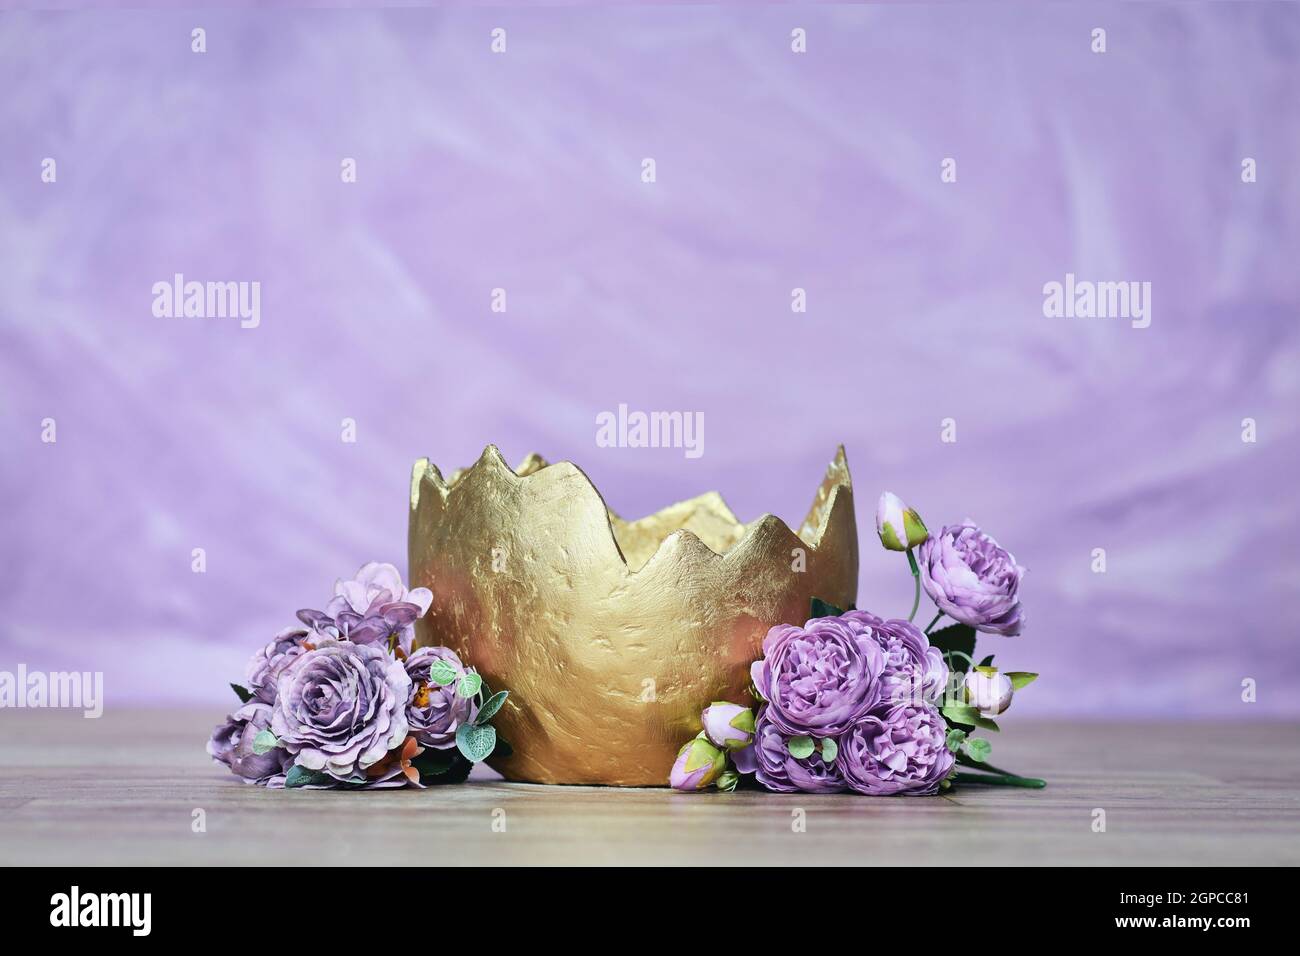 Sfondo digitale neonato con uovo dorato con fiori su sfondo viola Foto Stock